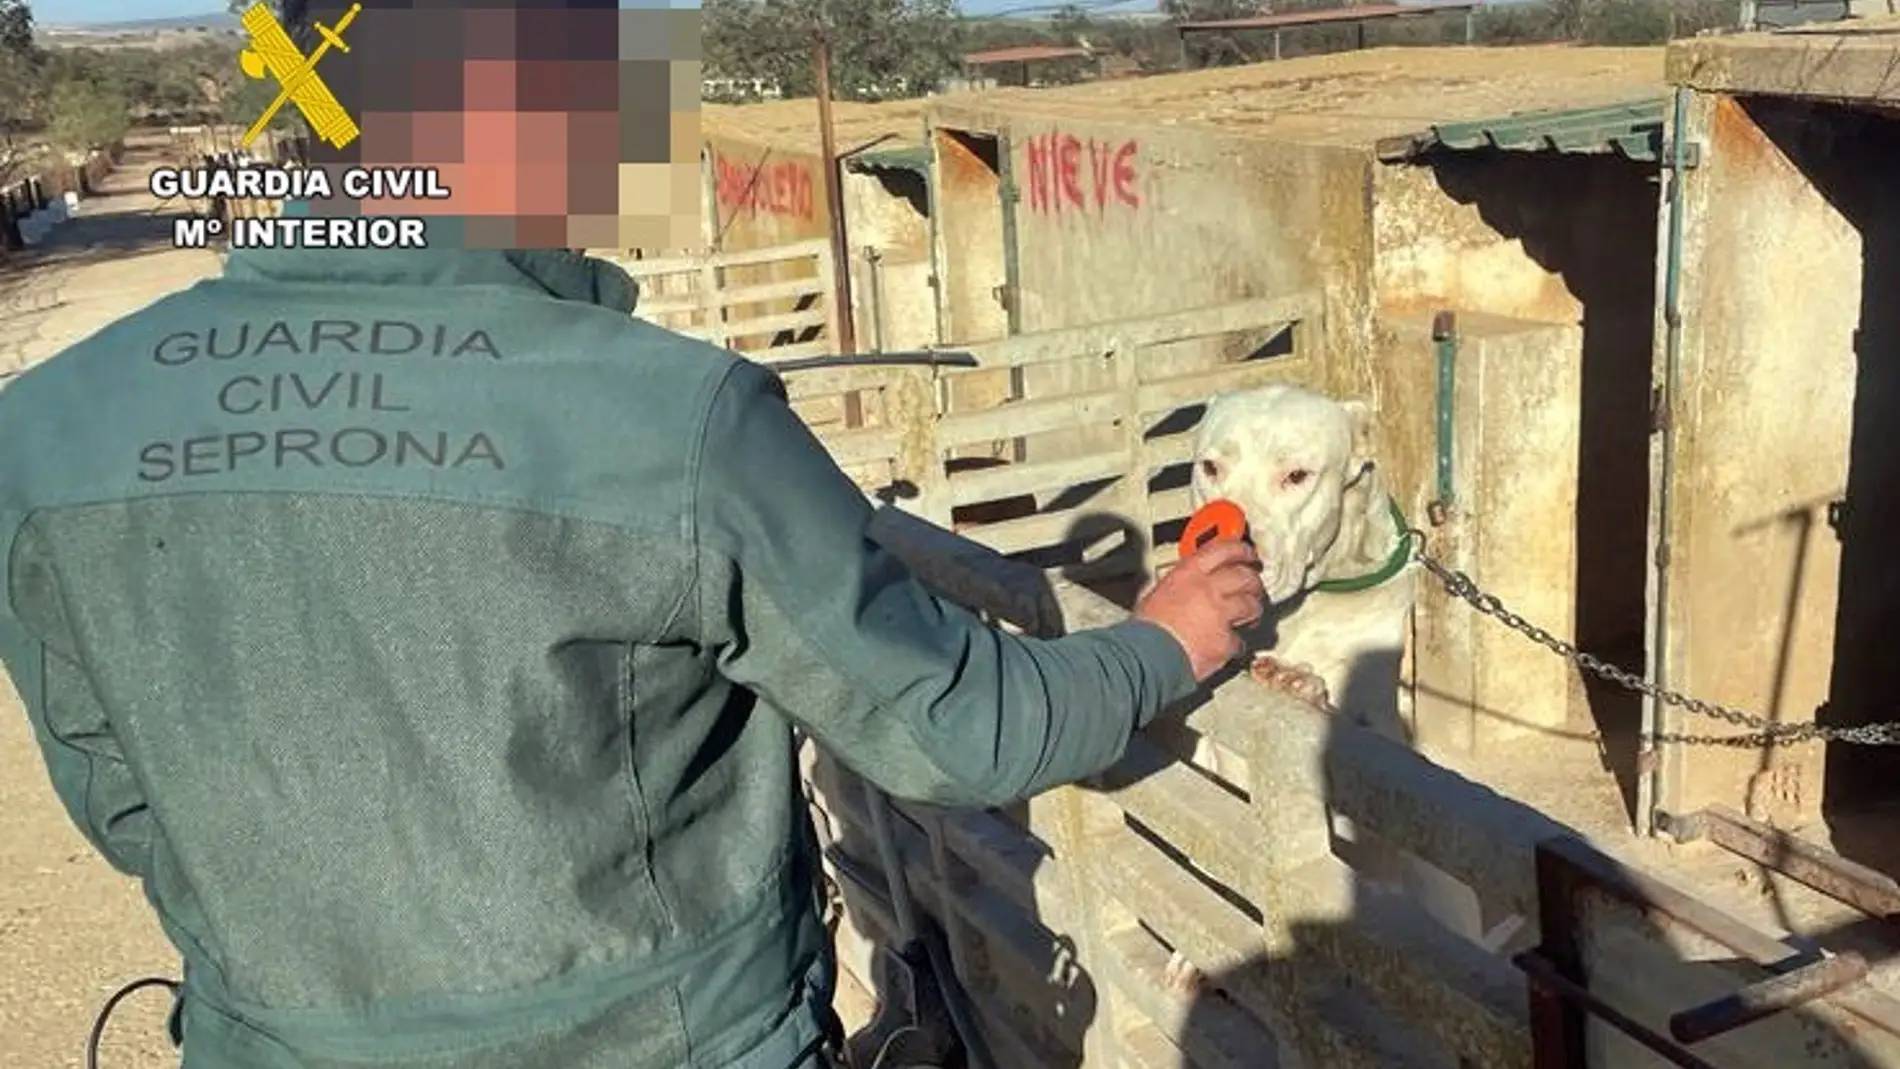 Investigados un hombre de Trasierra por cortar las orejas a 26 perros y un veterinario de Llerena por certificar las amputaciones